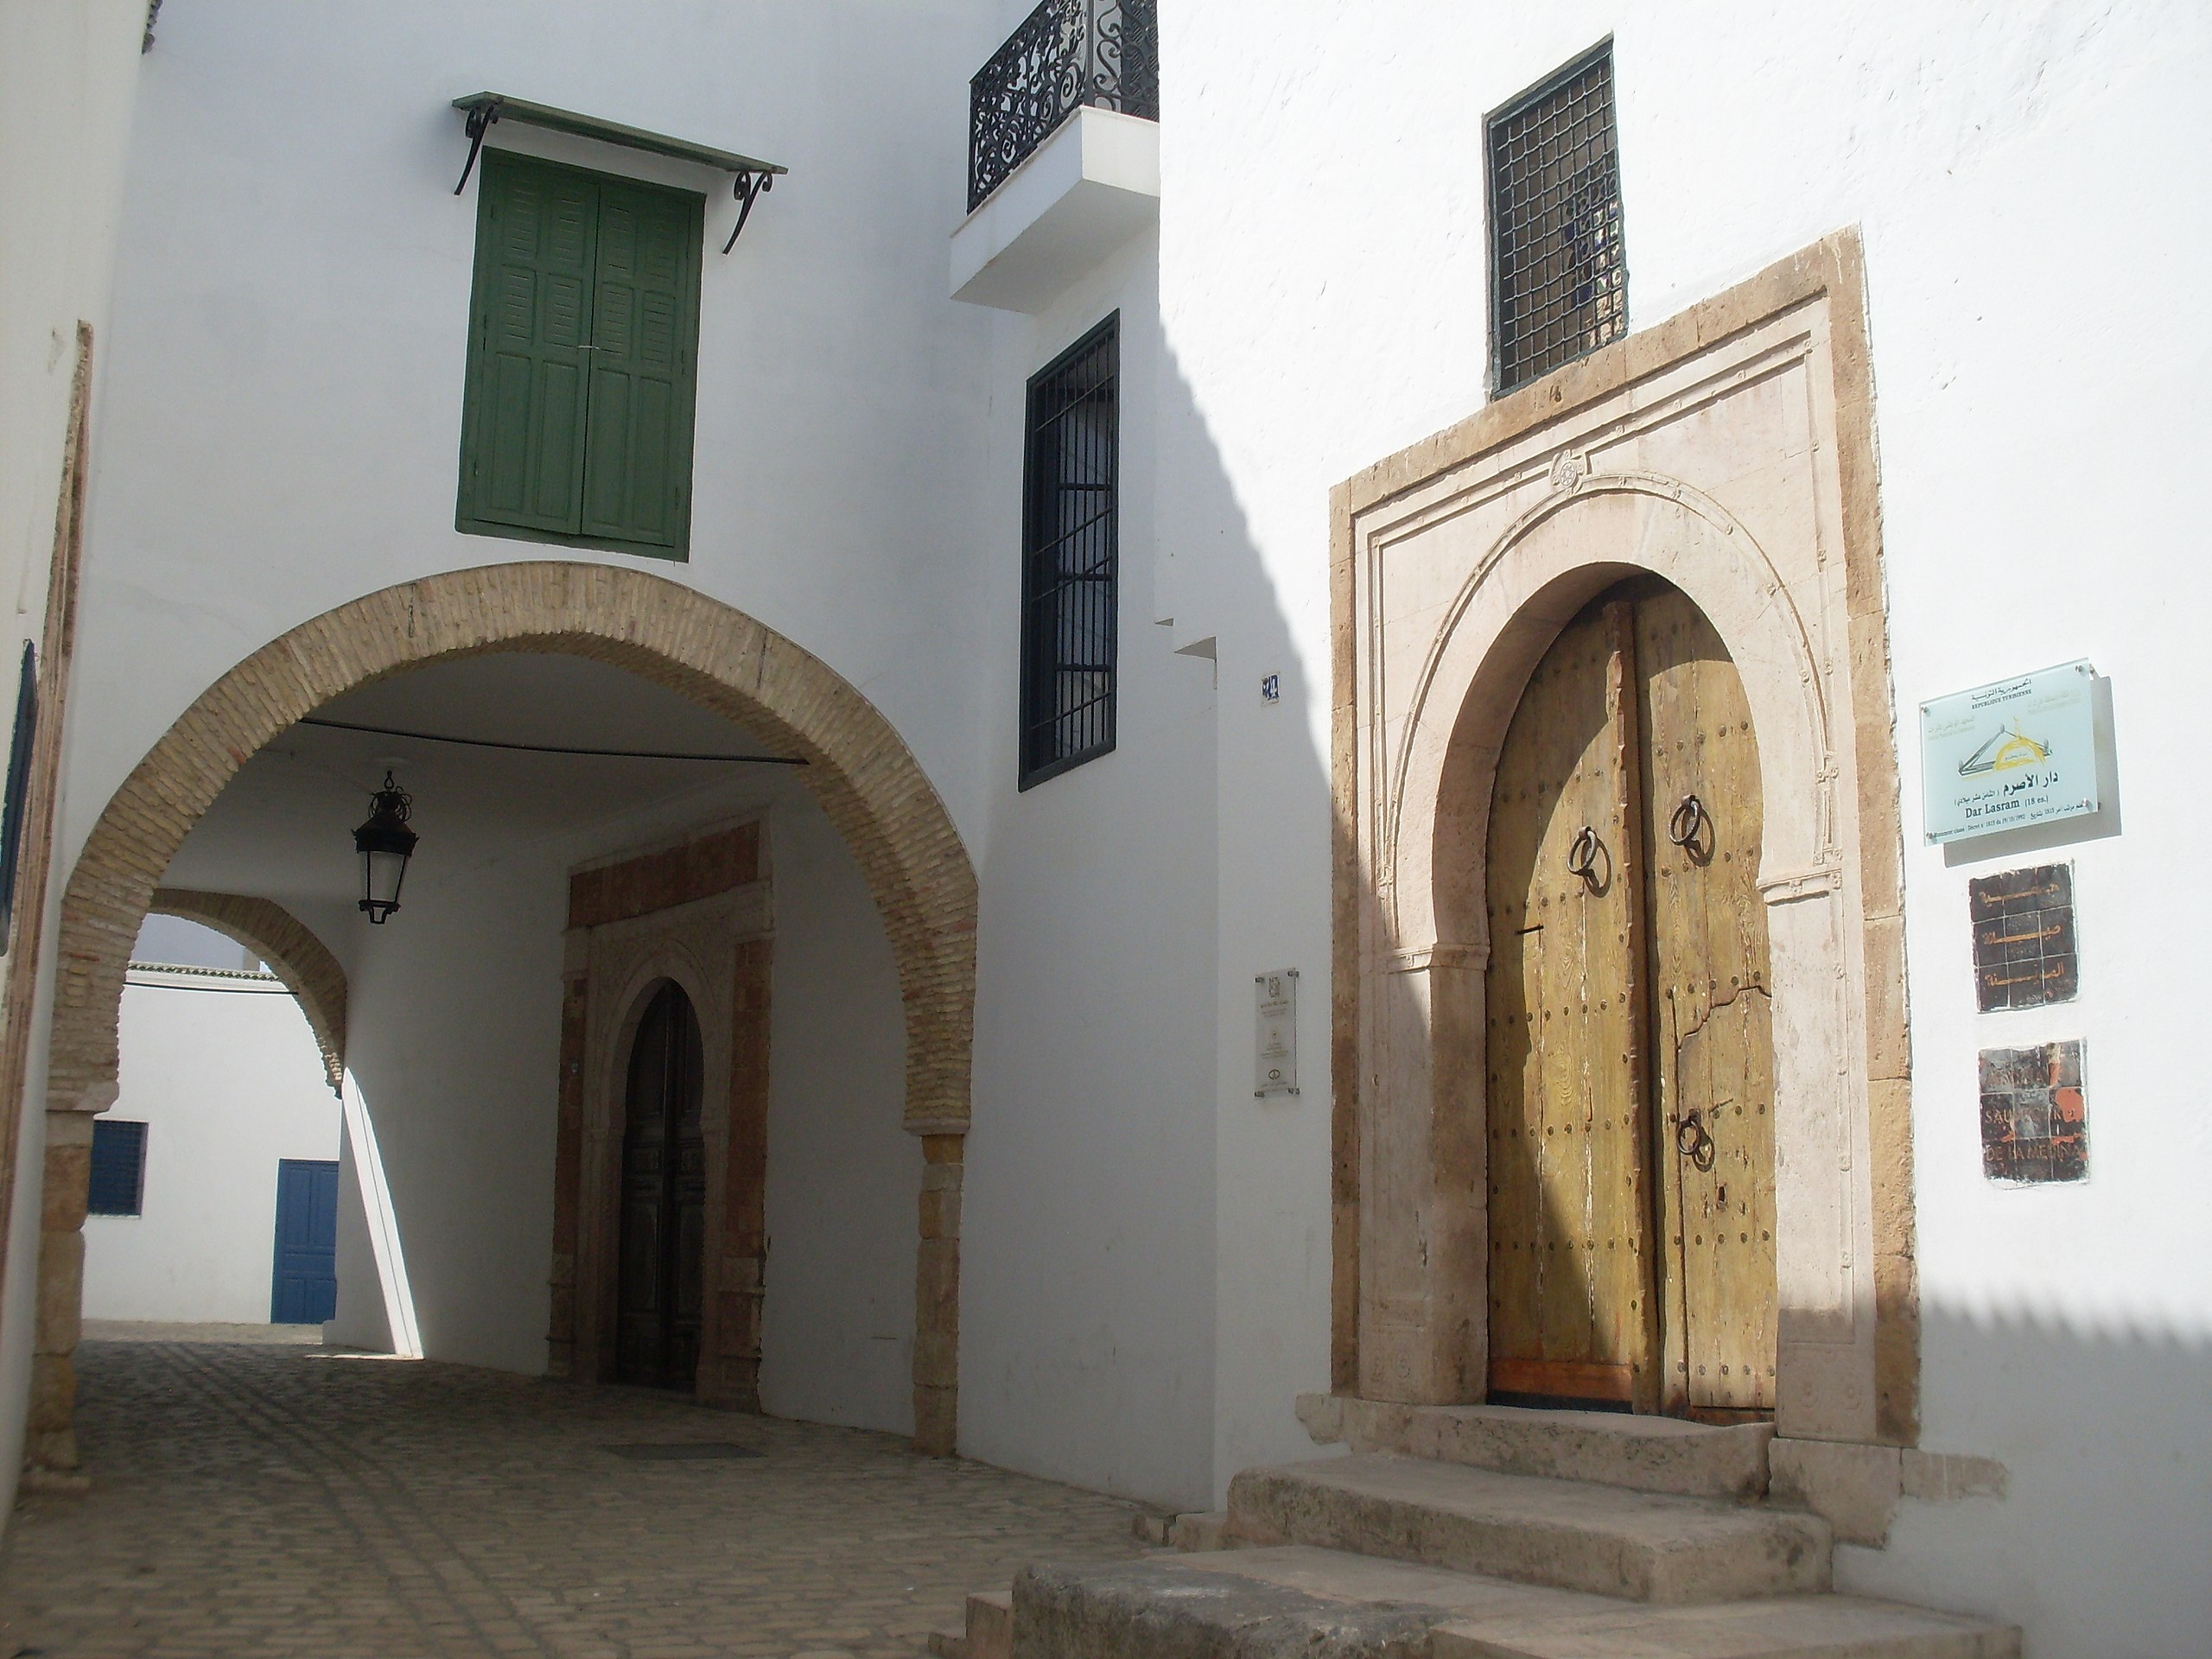 ASM - Association to Safeguard the Medina of Tunis 